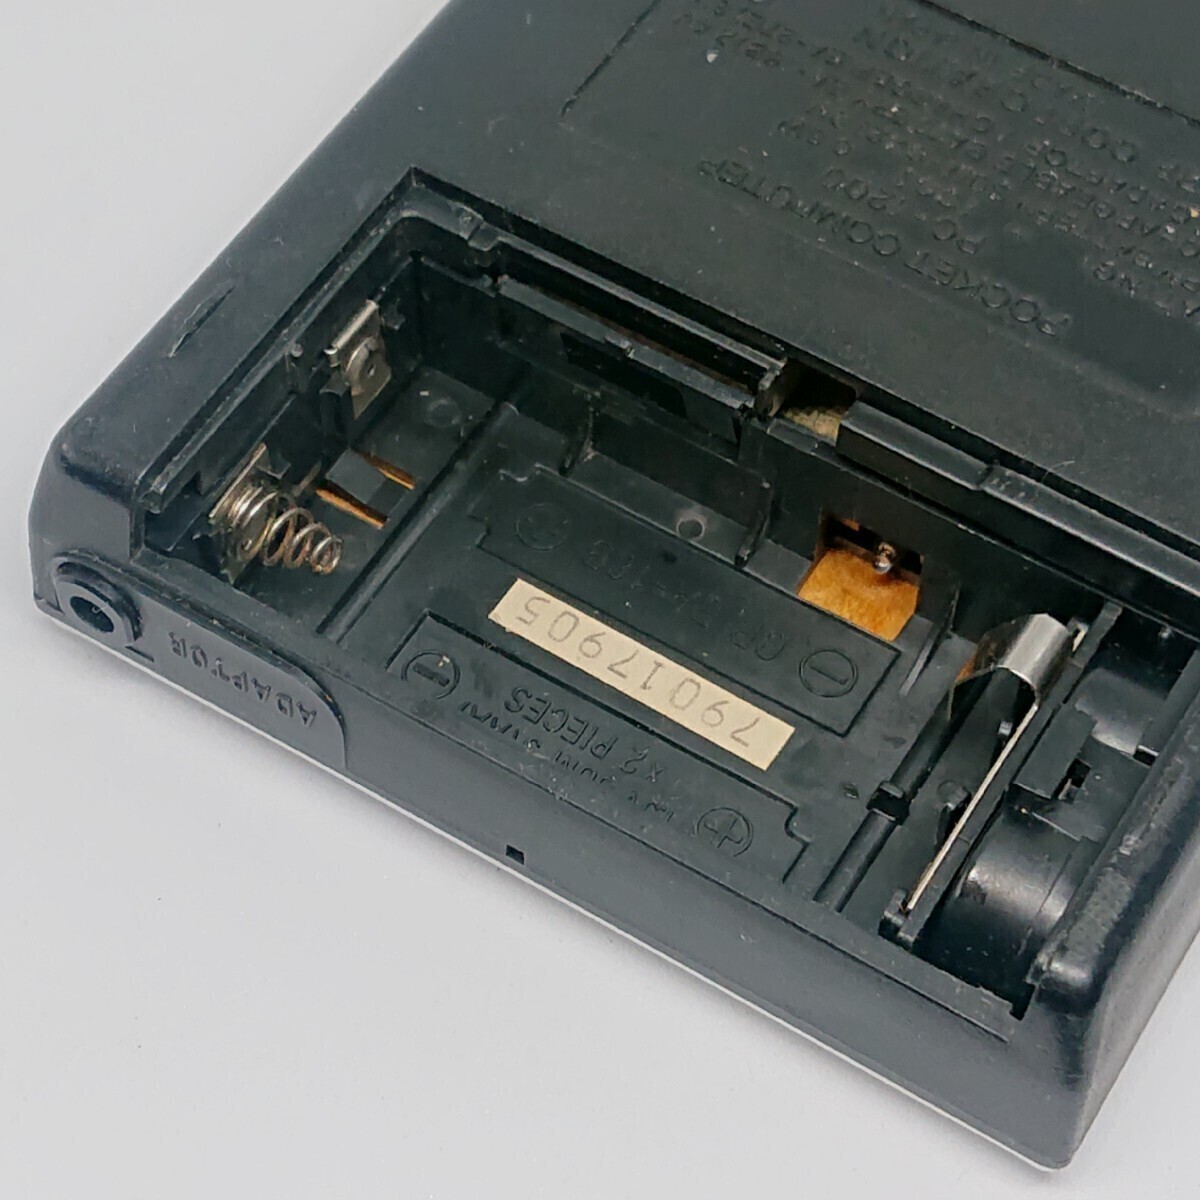 希少レア 初代ポケットコンピューターSHARP PC-1200 1977年発売 シャープ ピタゴラス プログラム電卓 関数電卓 